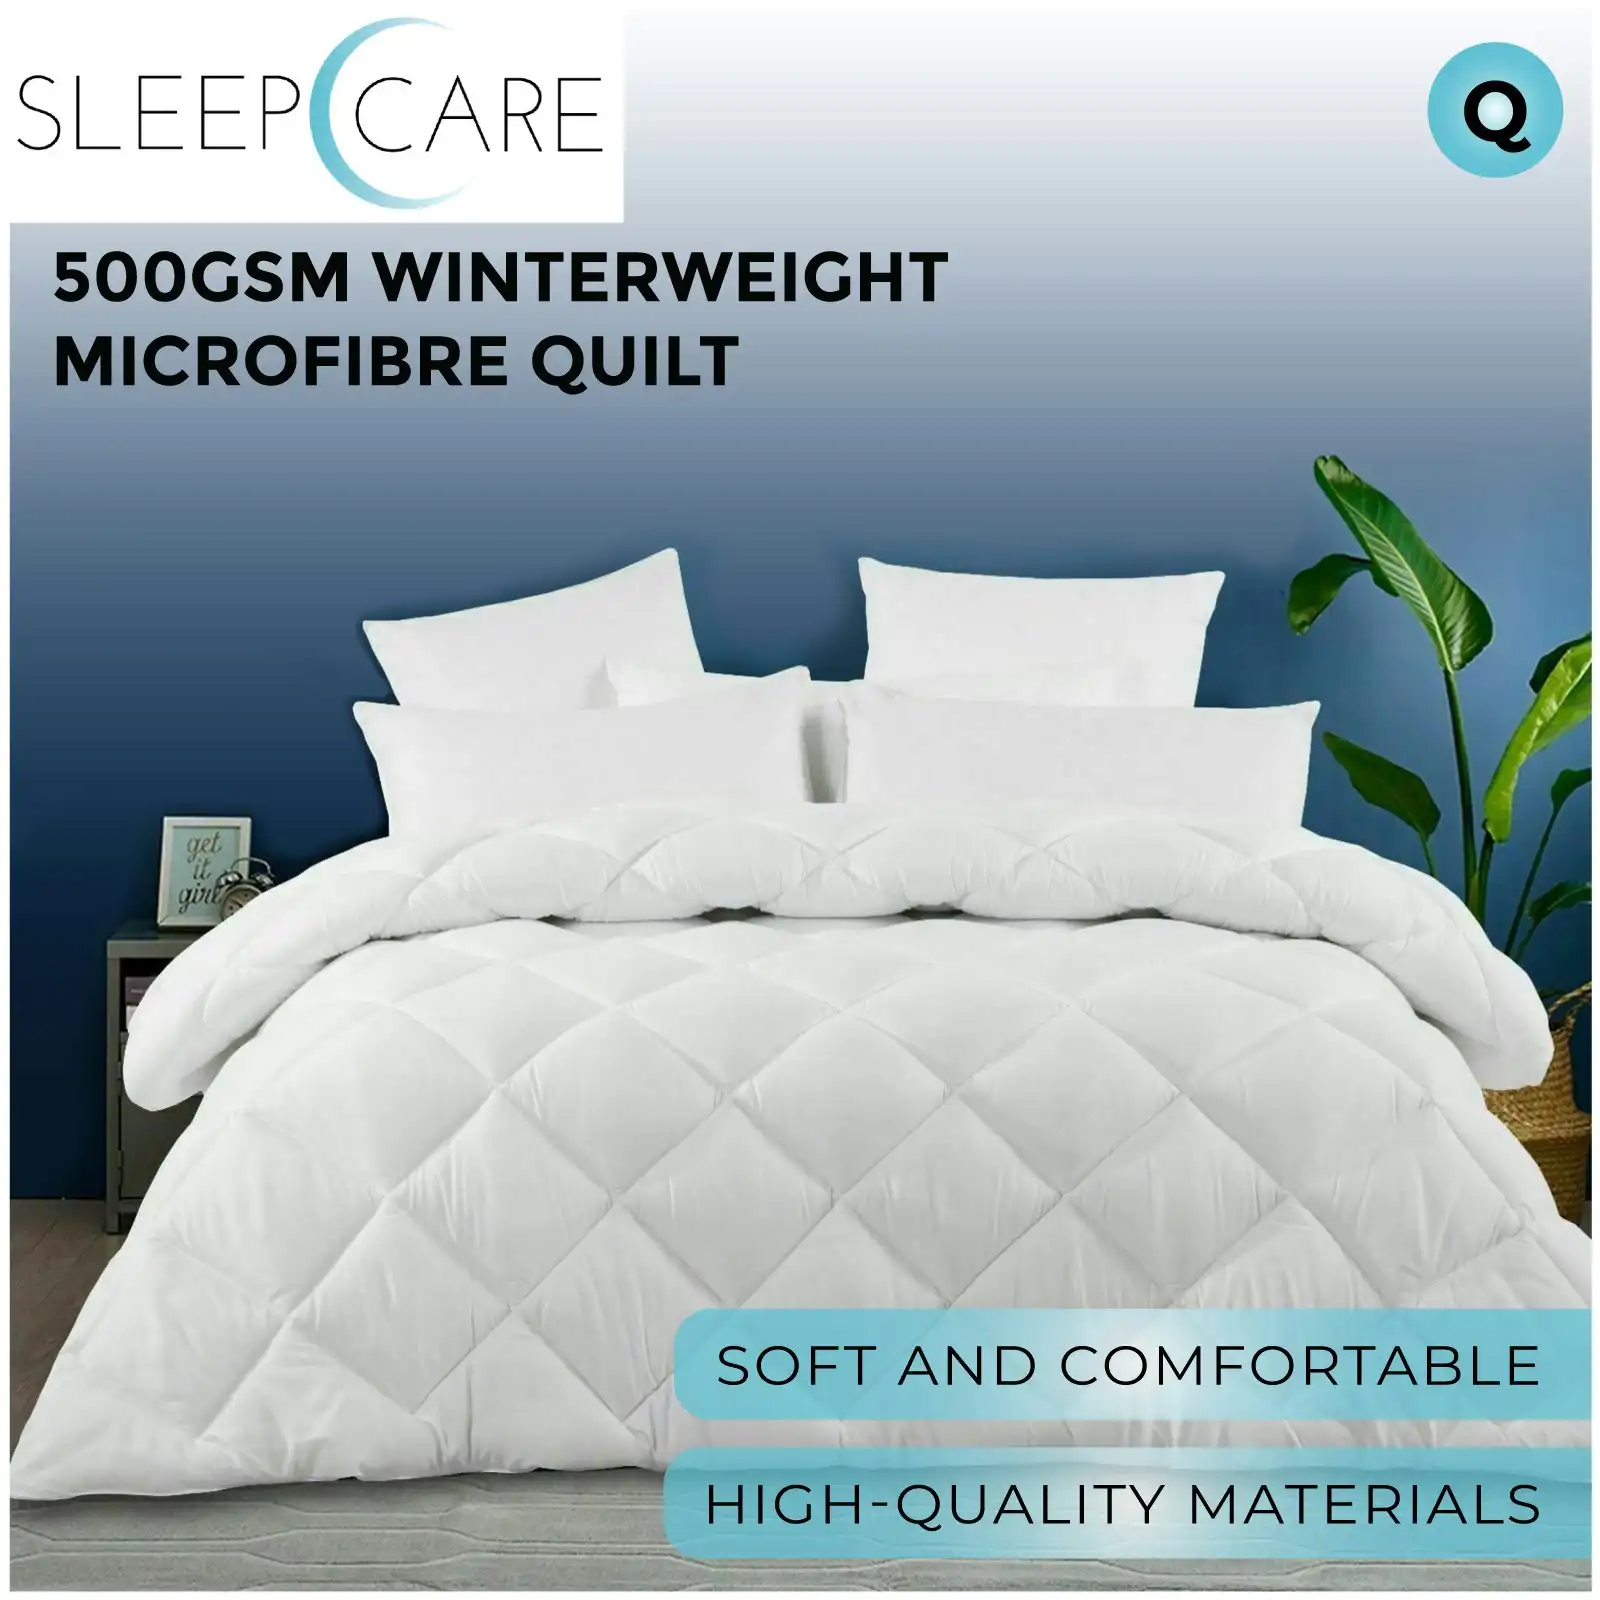 Sleepcare 500GSM Winterweight Microfibre Quilt Queen Bed